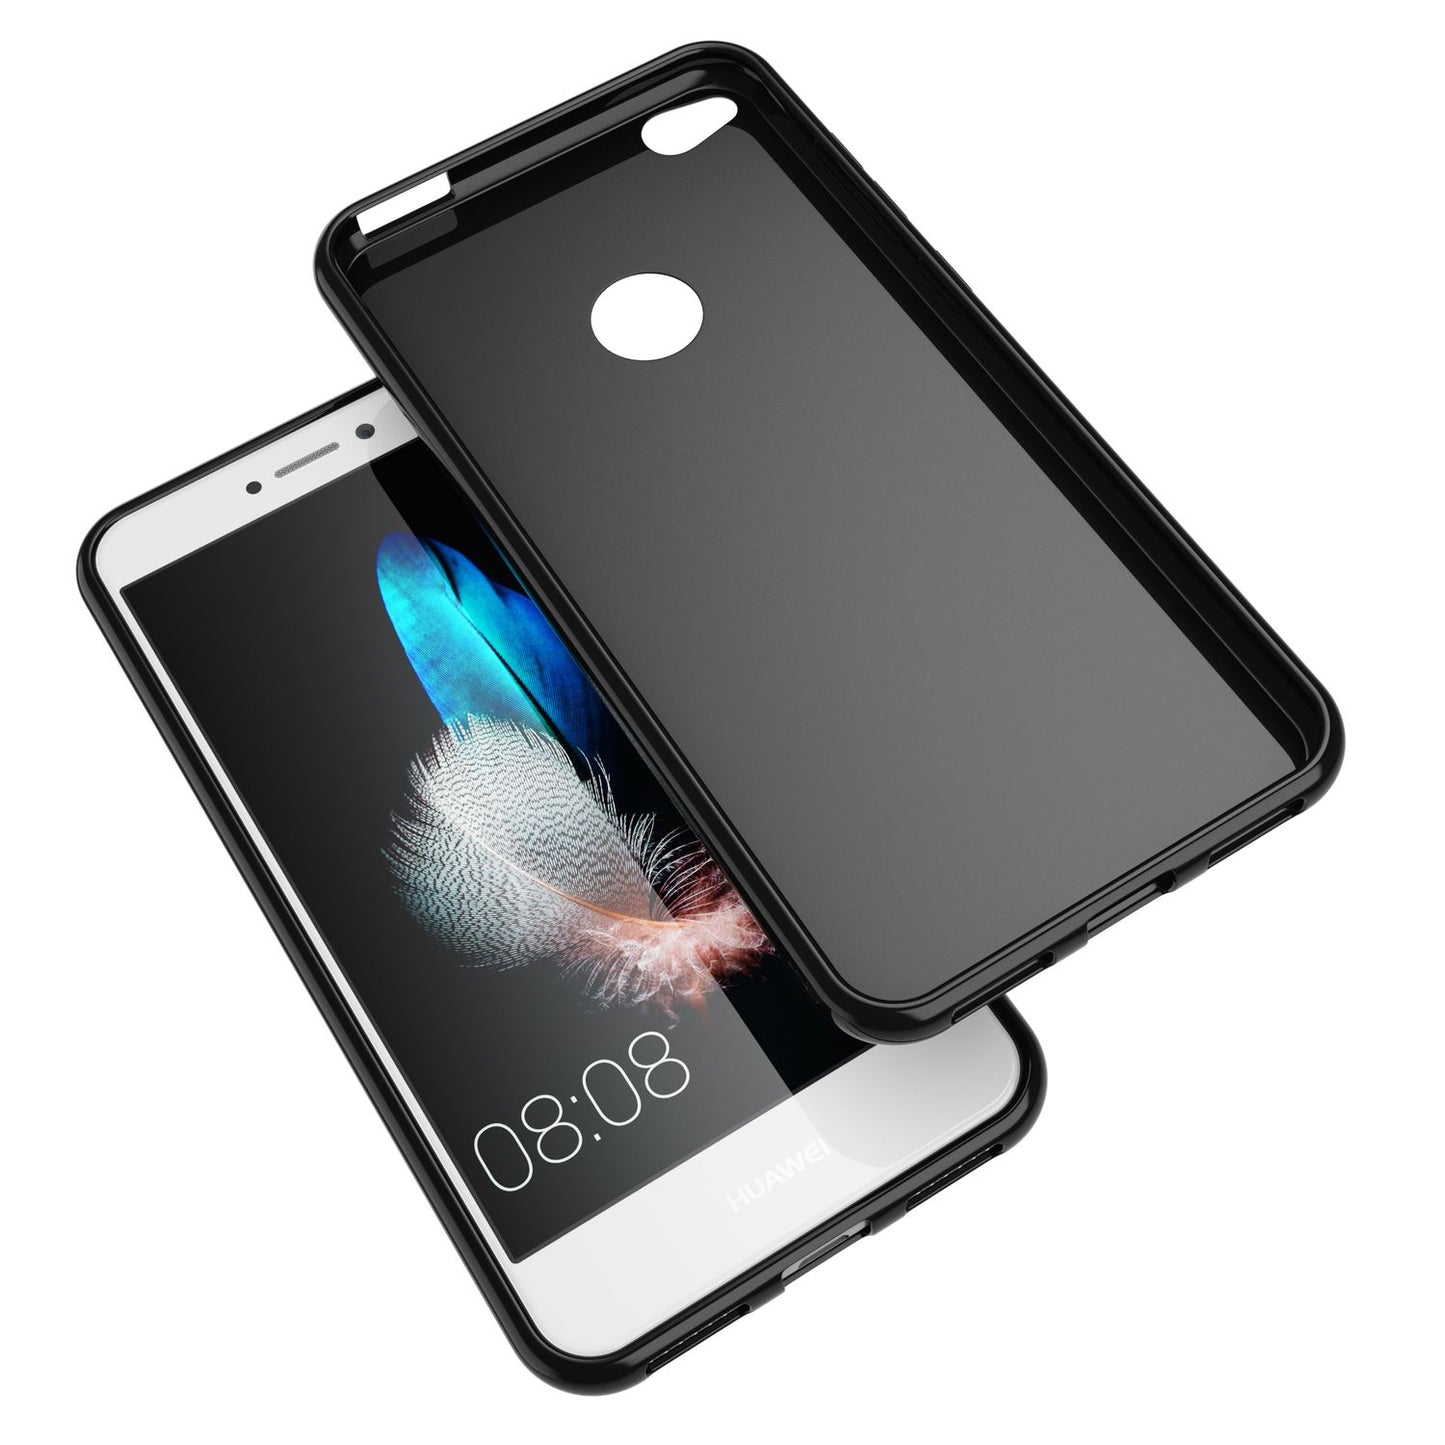 Huawei P8 Lite 2017 Hülle Handyhülle von NALIA, Slim Silikon Case Schutz Cover